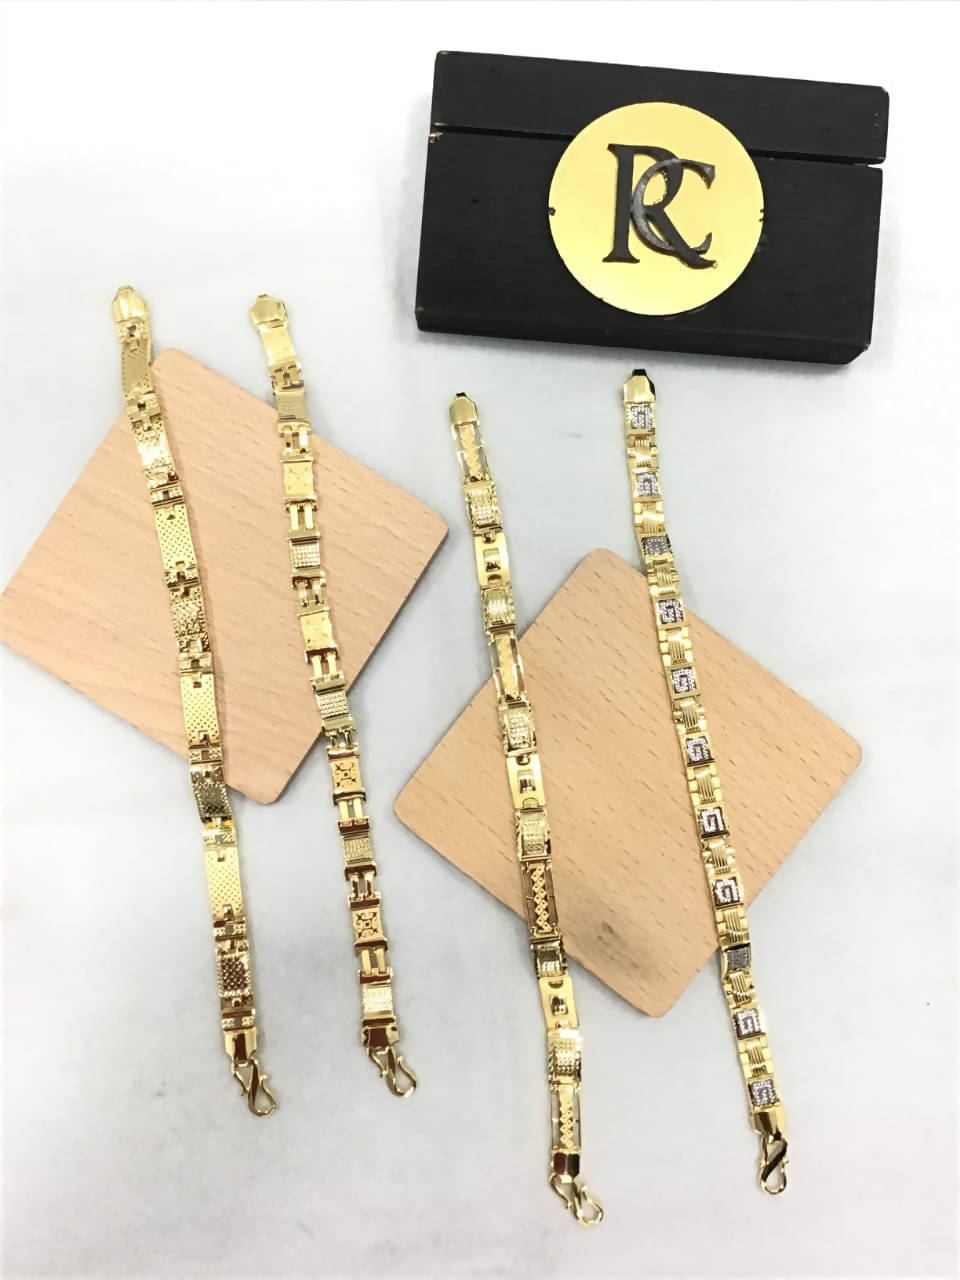 Rcj EXL Lazer Cast Bracelets